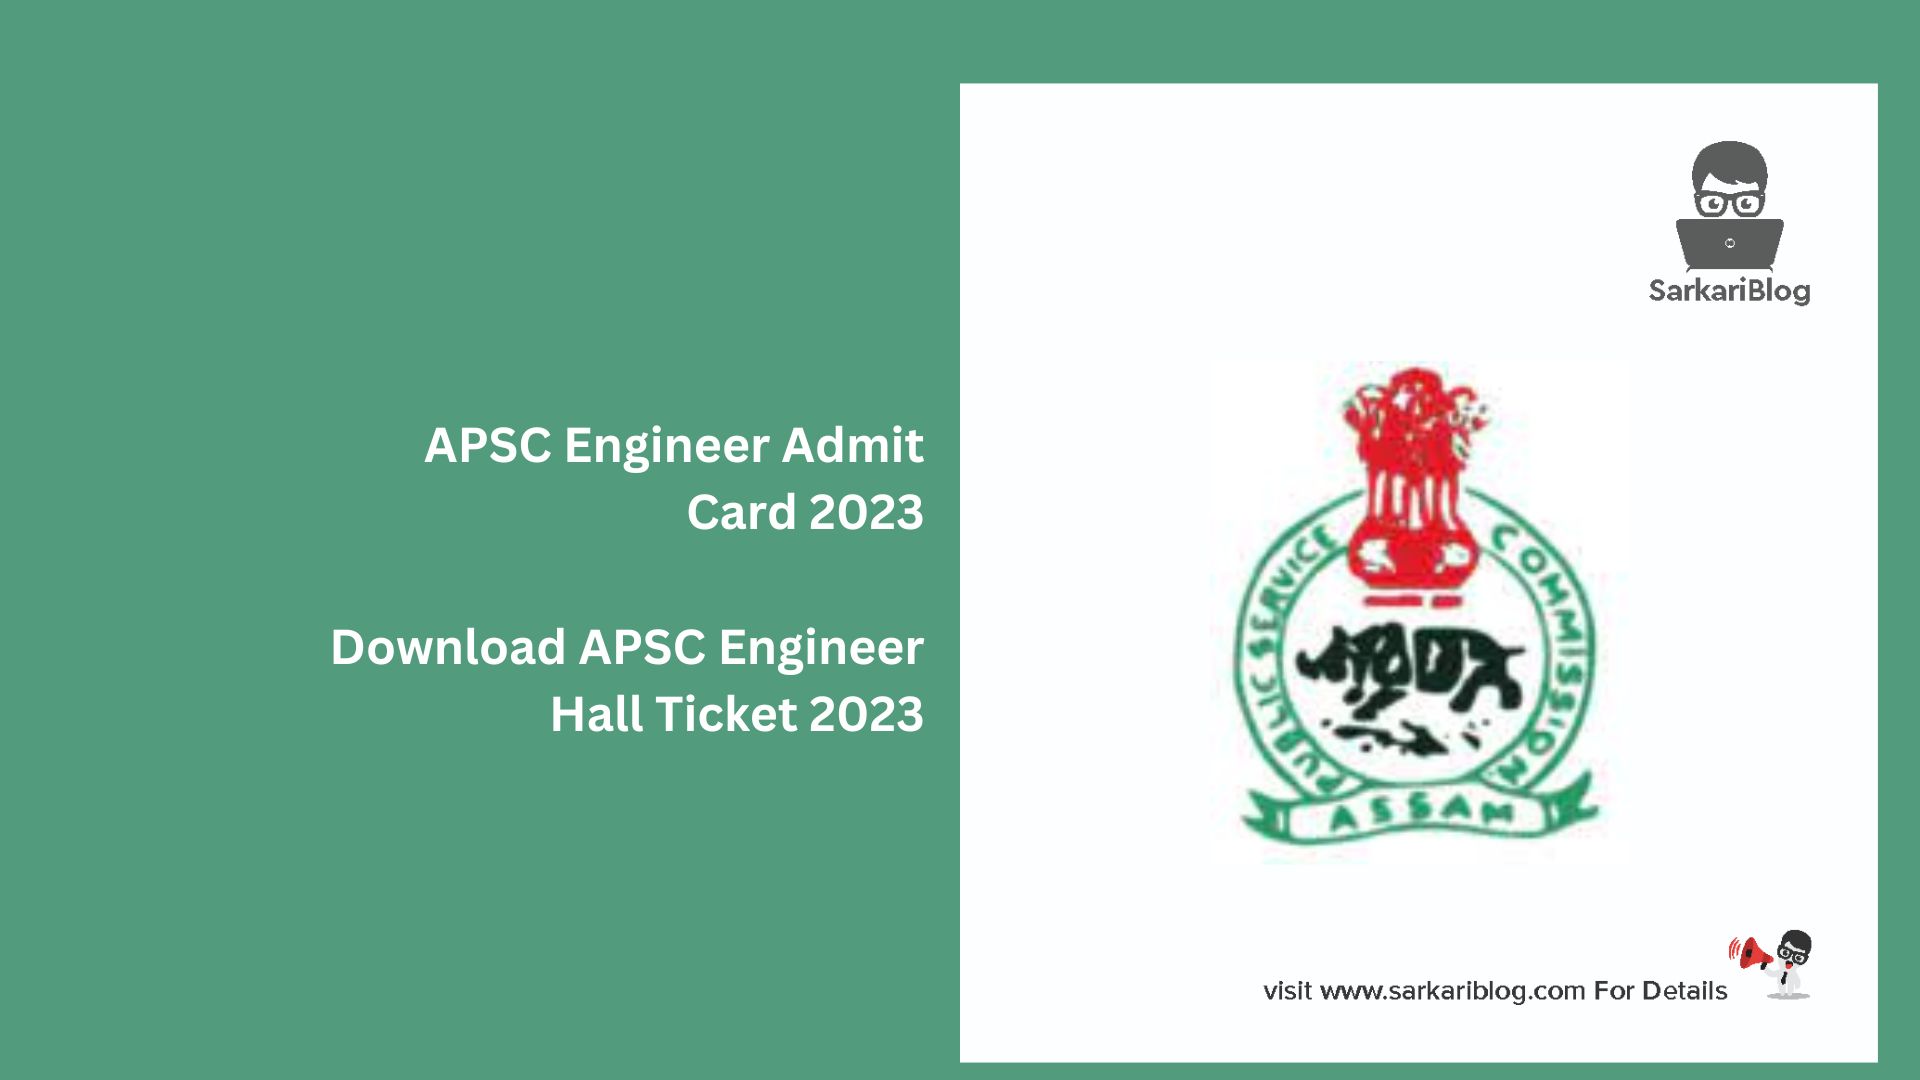 APSC Engineer Admit Card 2023